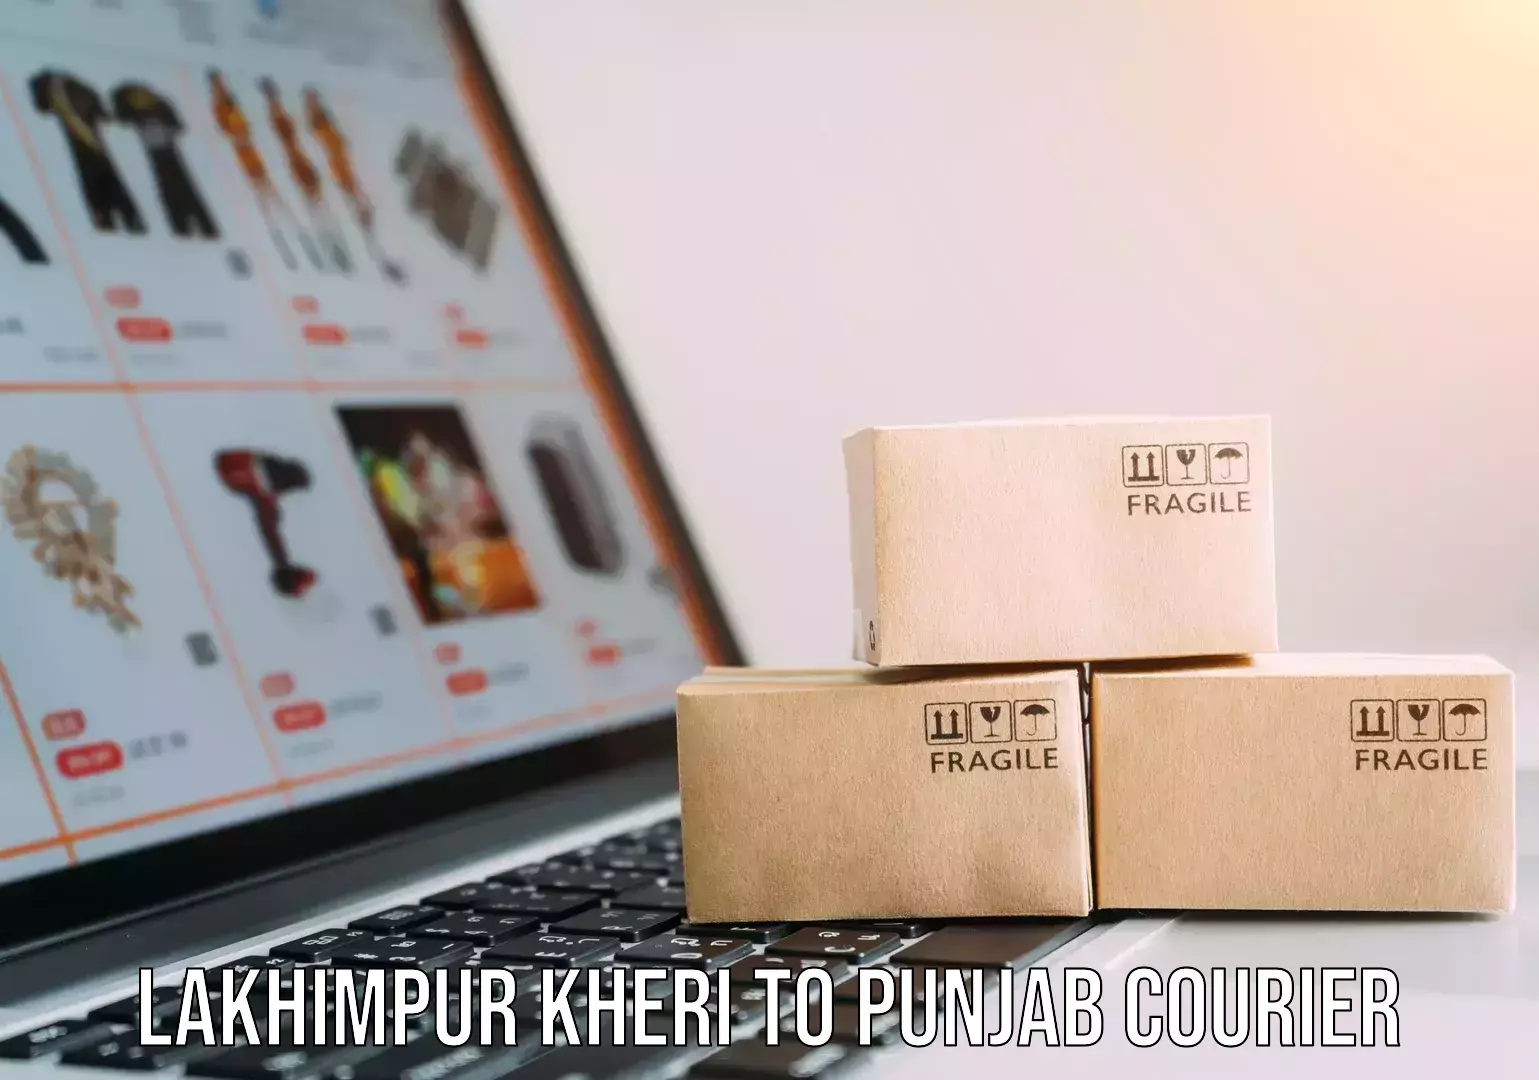 Efficient furniture shifting Lakhimpur Kheri to Punjab